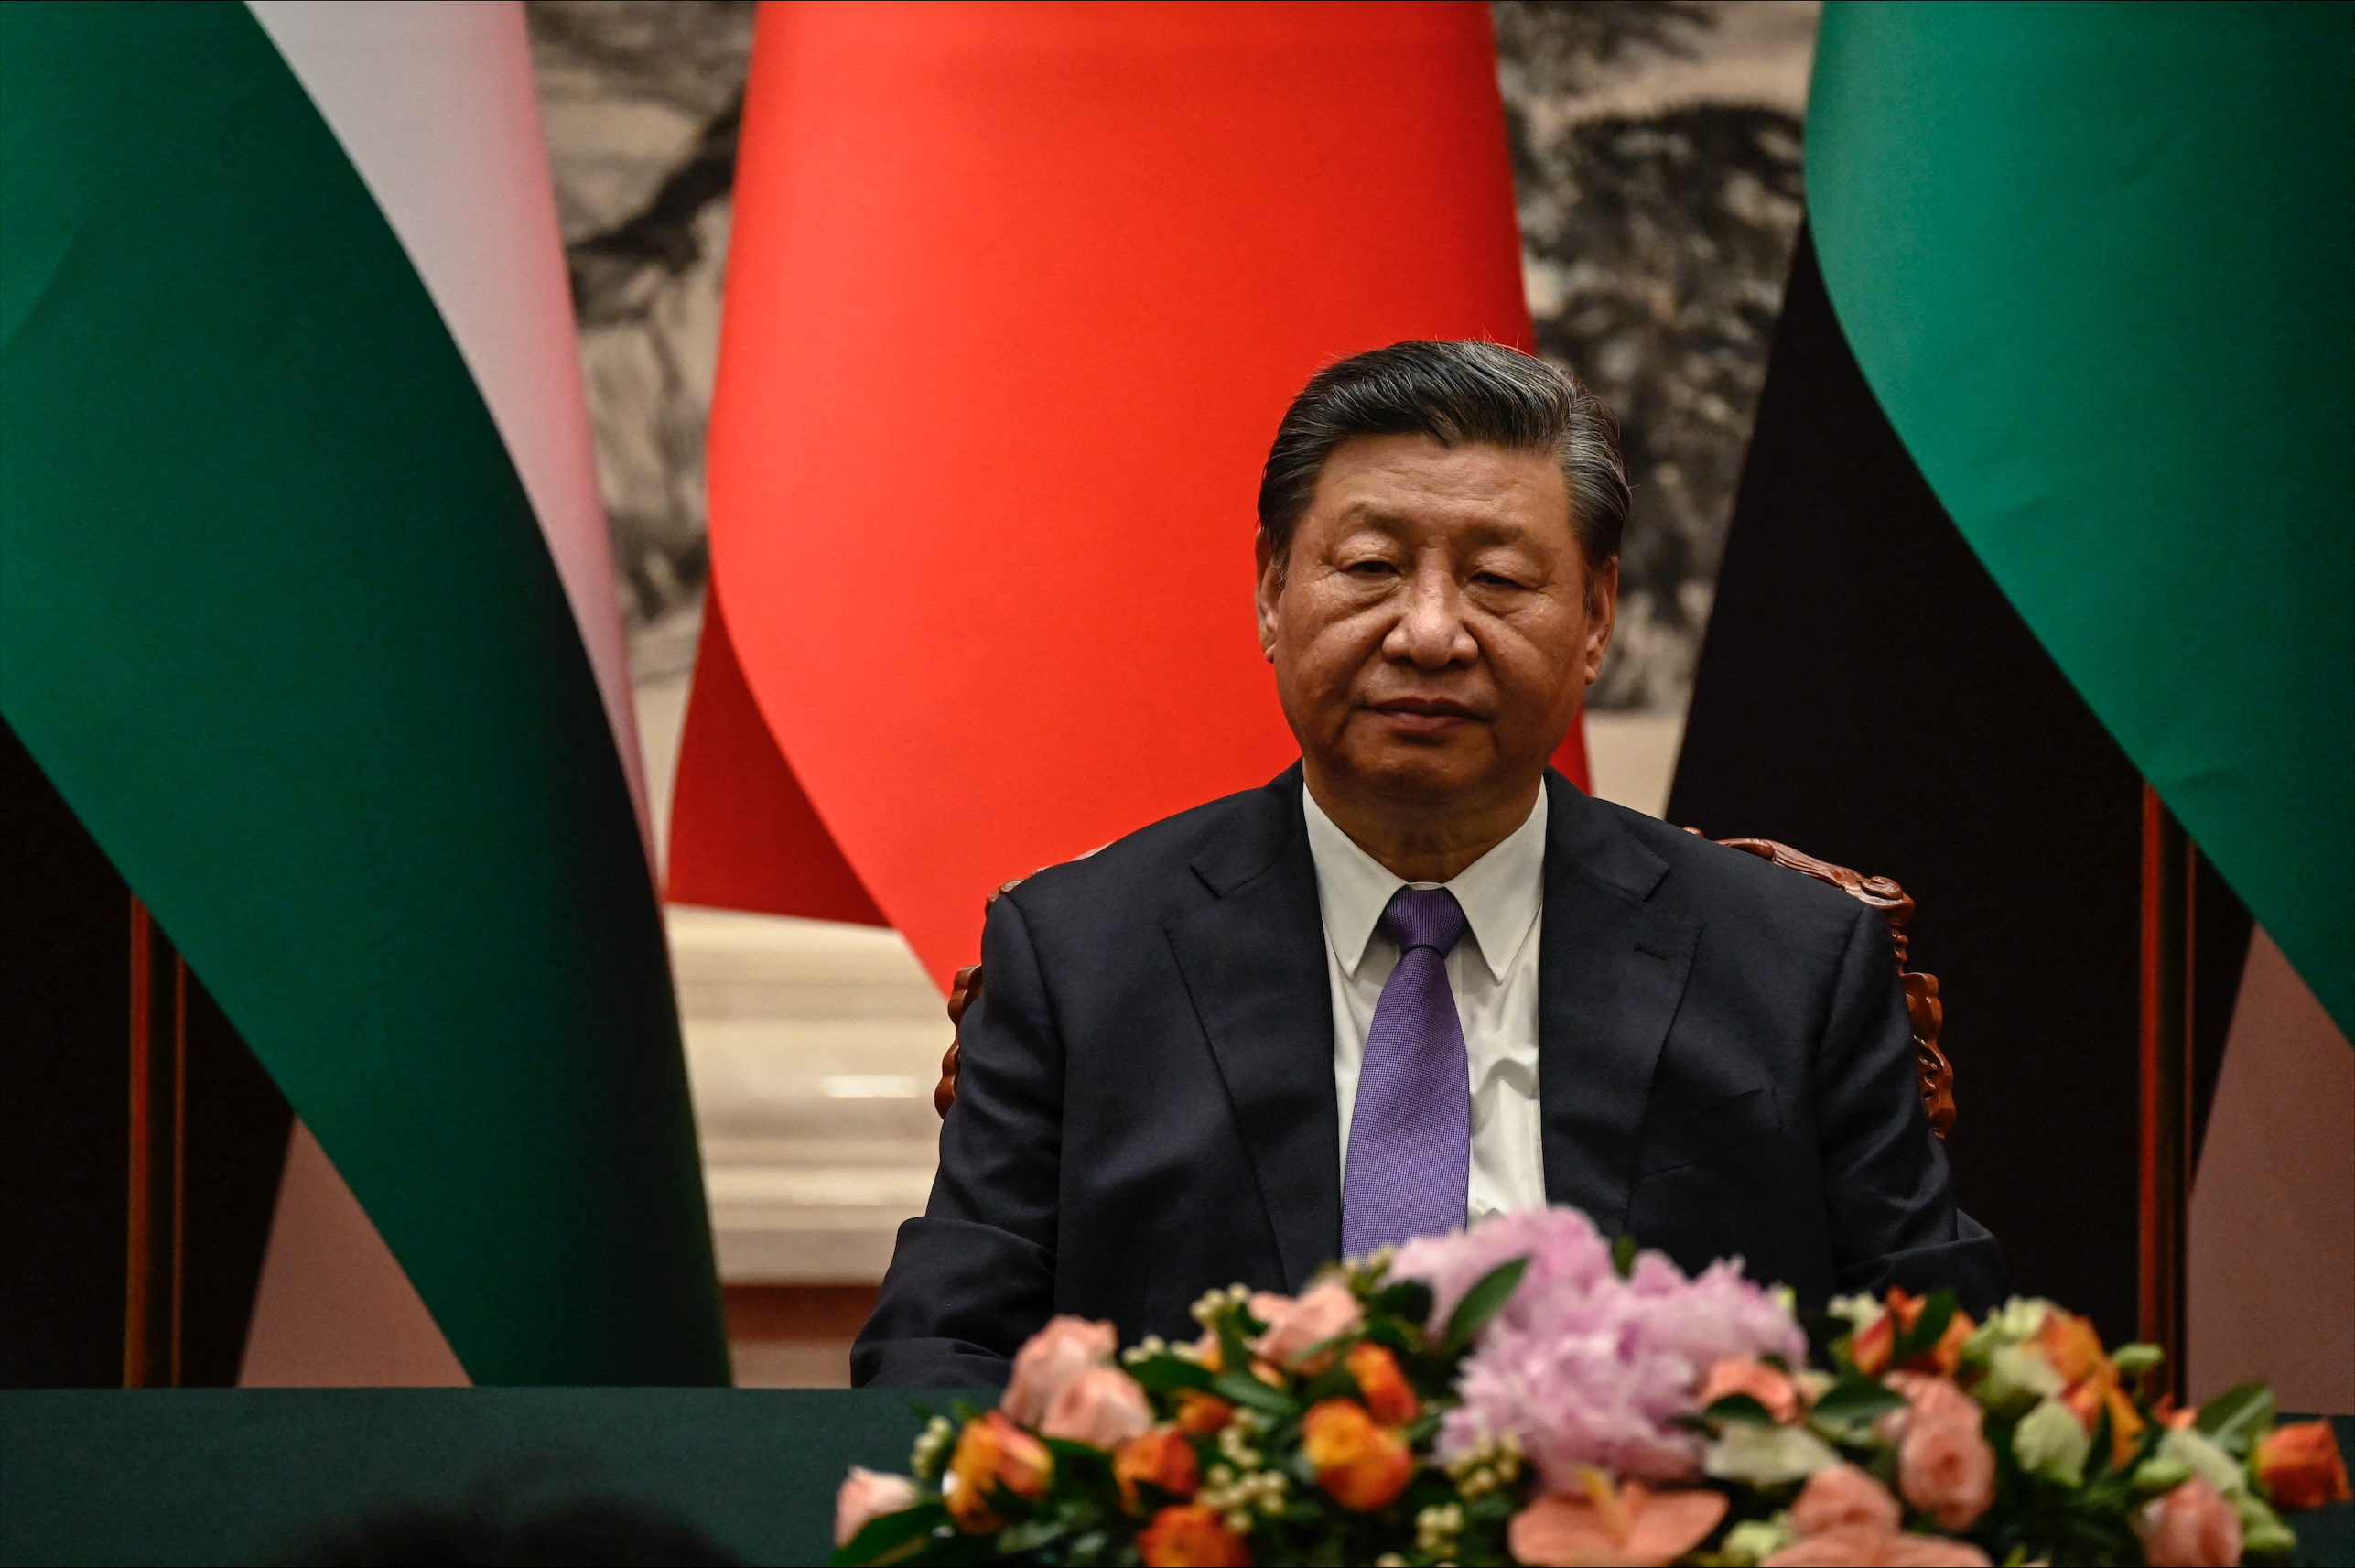 El jefe del régimen Chino, Xi Jinping, durante un acto en Beijing con Mahmoud Abbas, presidente de la Autoridad Palestina (Reuters)